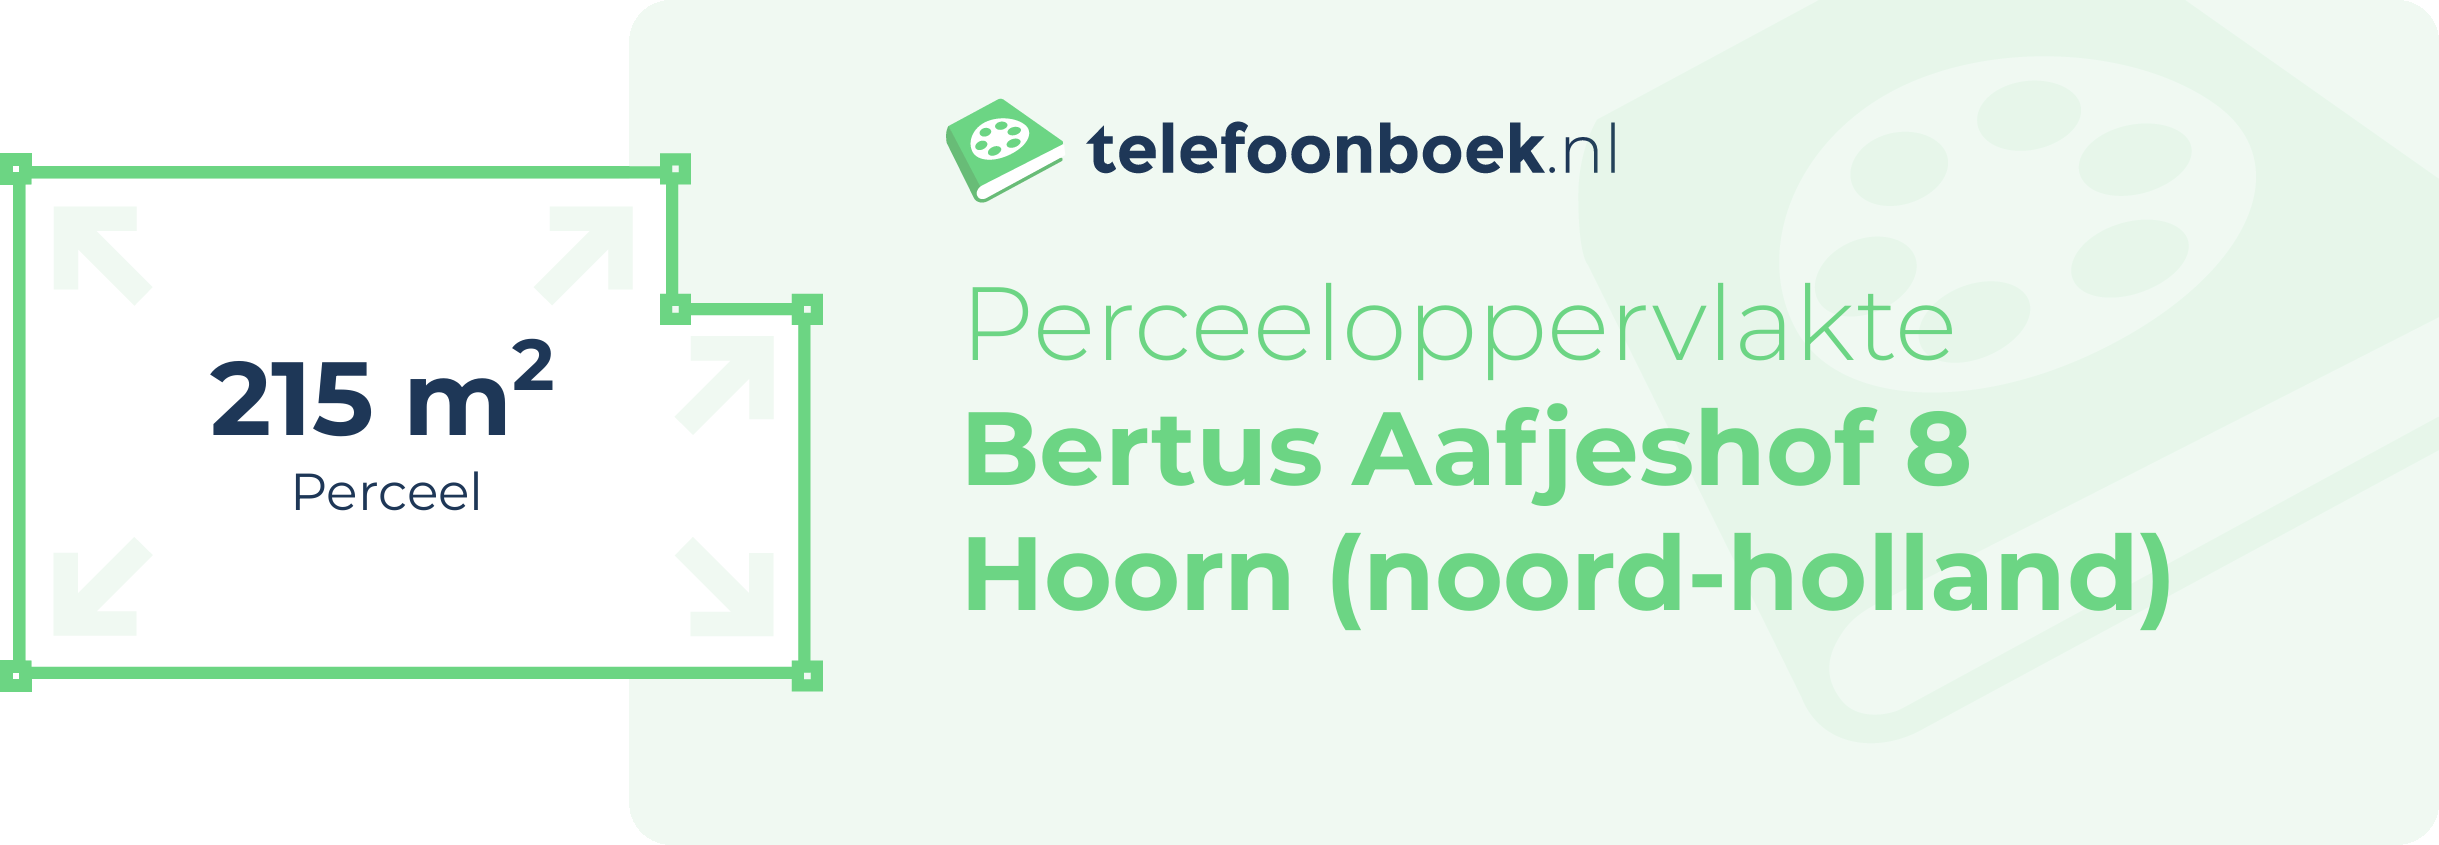 Perceeloppervlakte Bertus Aafjeshof 8 Hoorn (Noord-Holland)